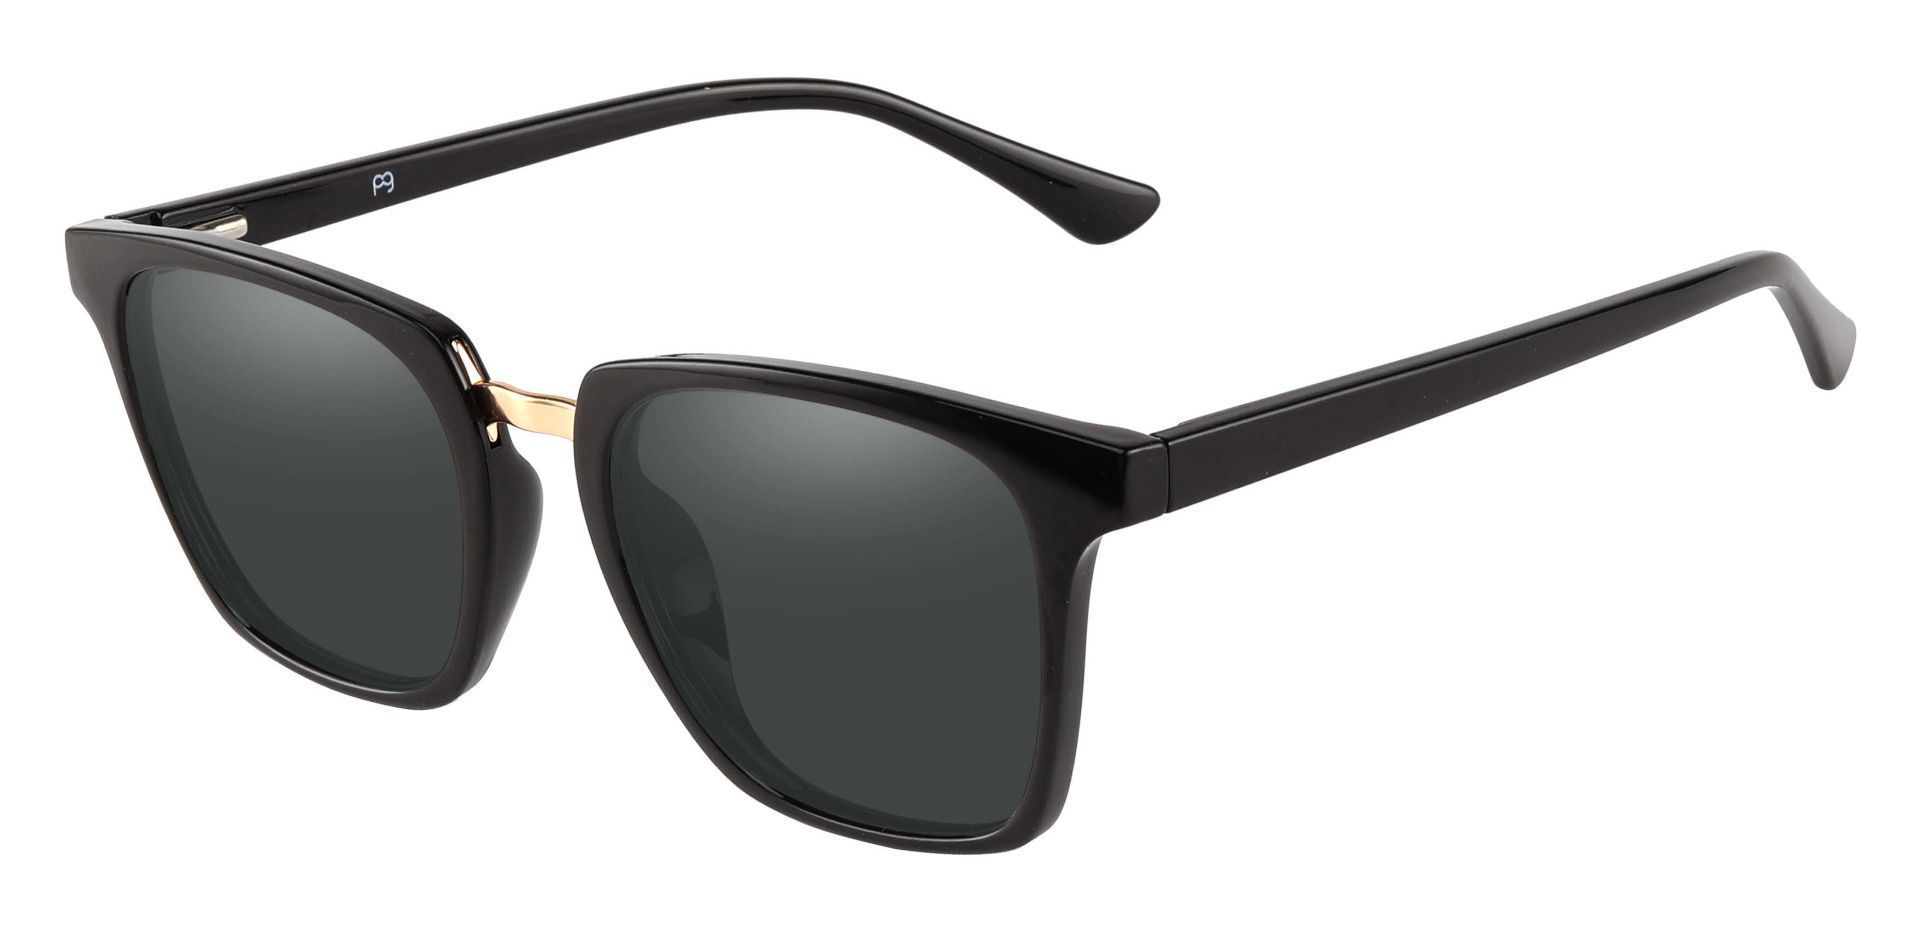 Delta Square Prescription Sunglasses - Black Frame With Gray Lenses